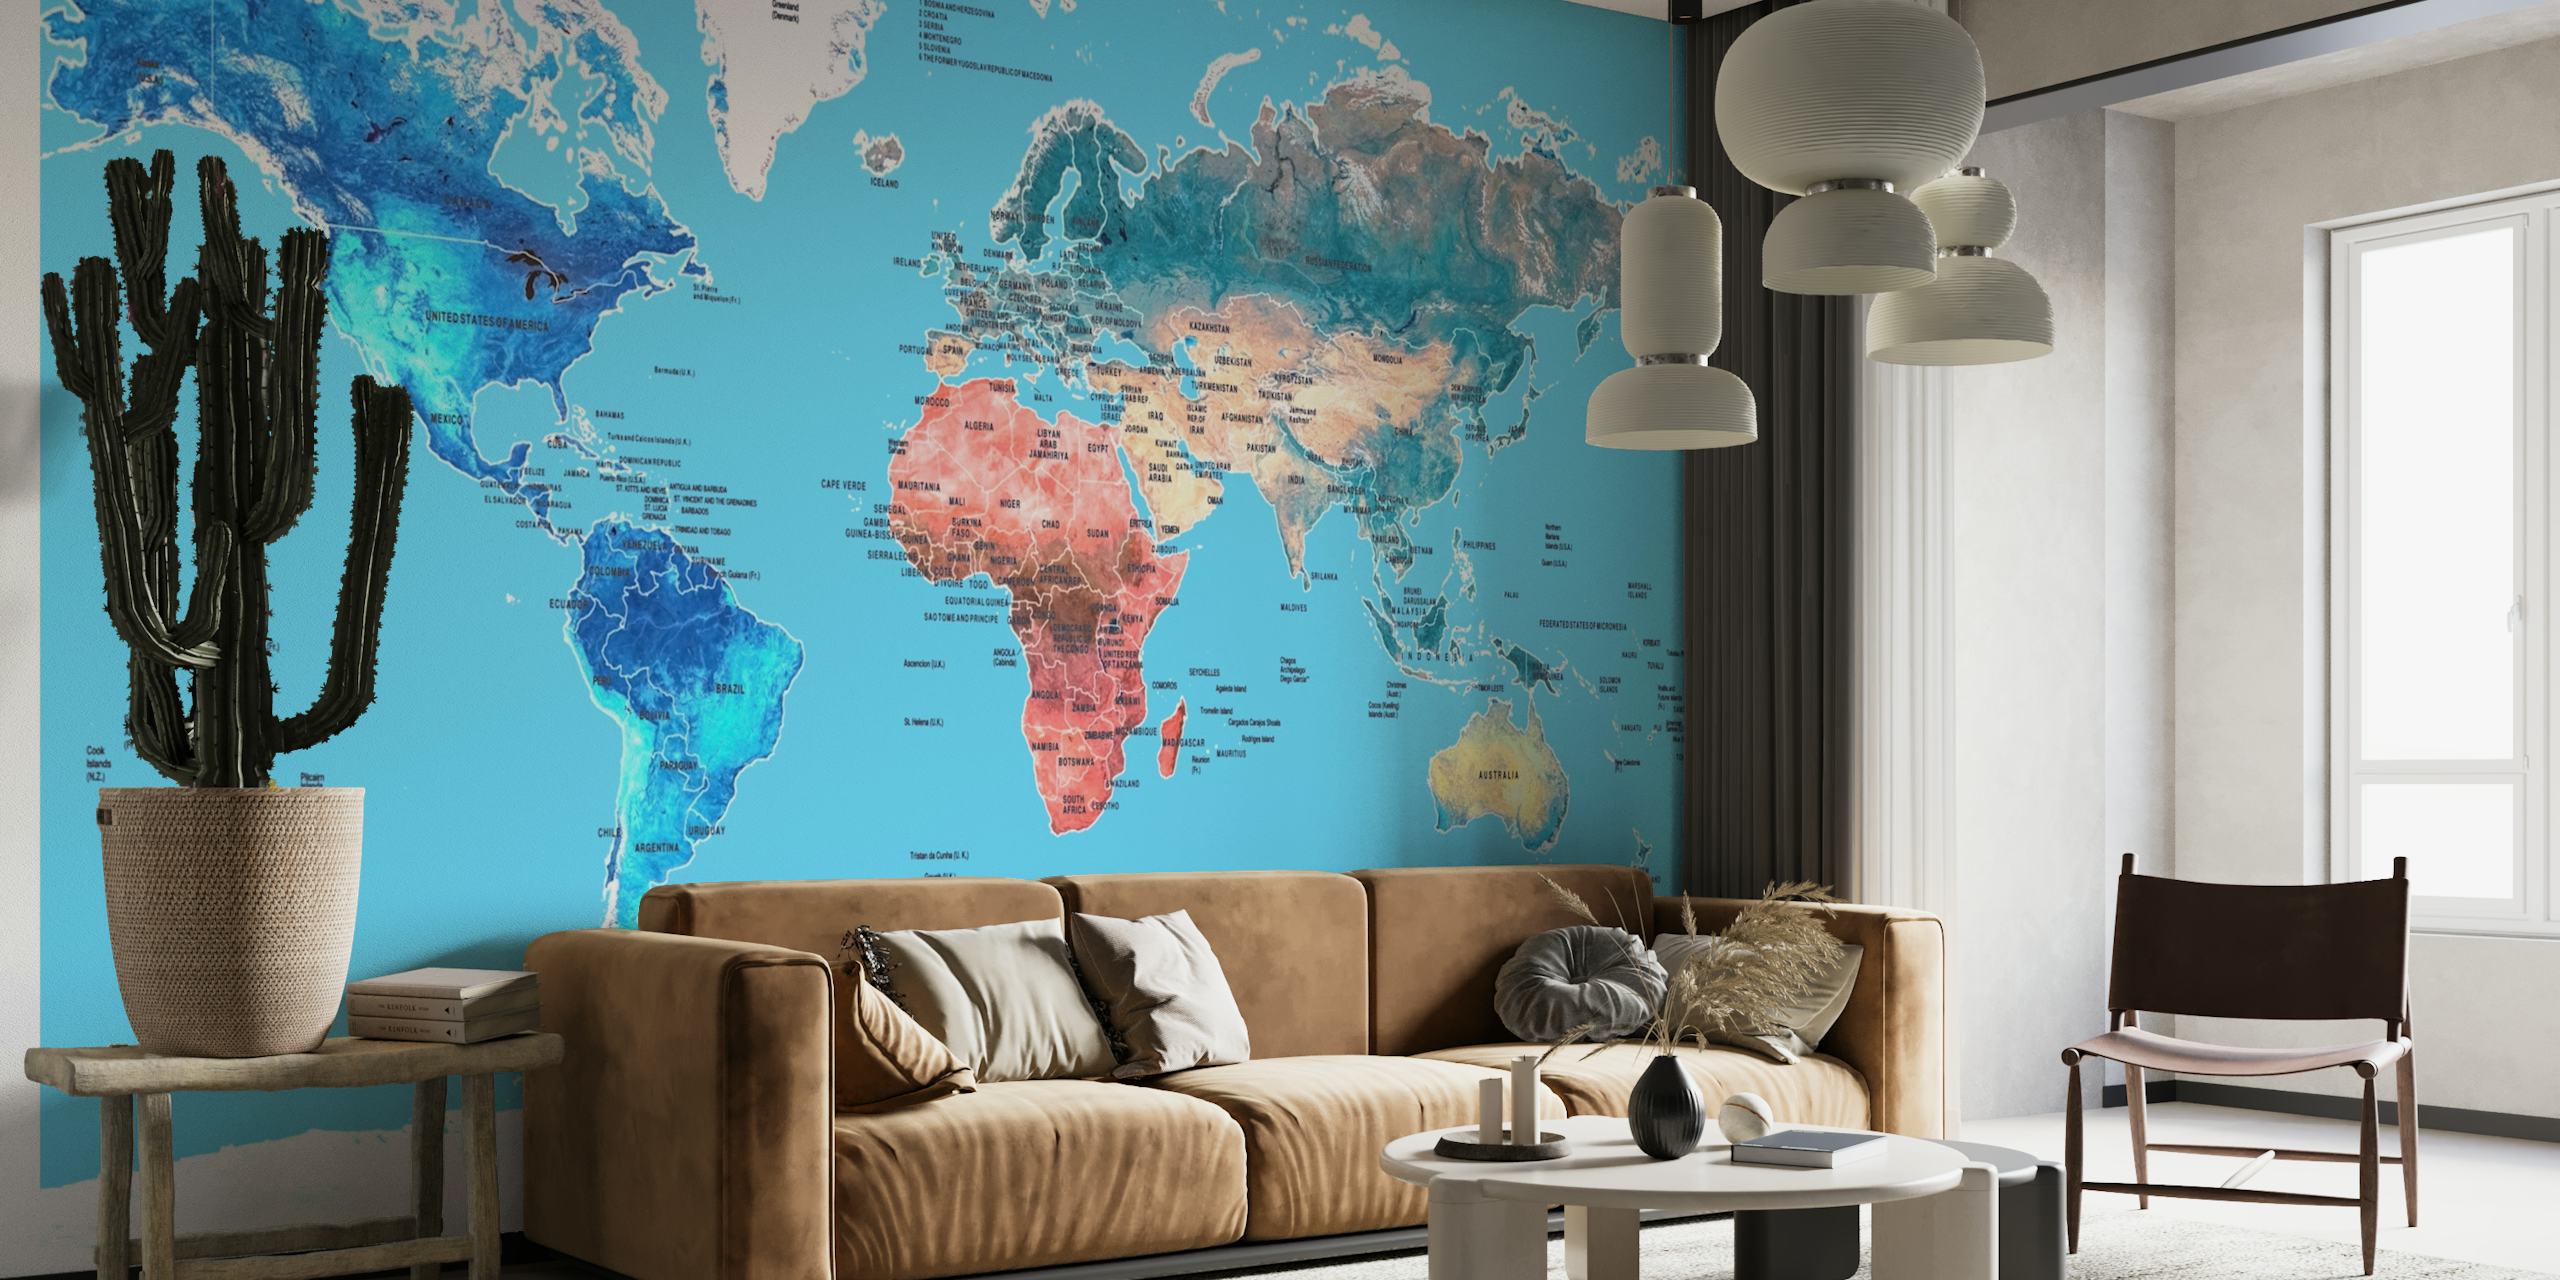 Colourful World Map papel pintado